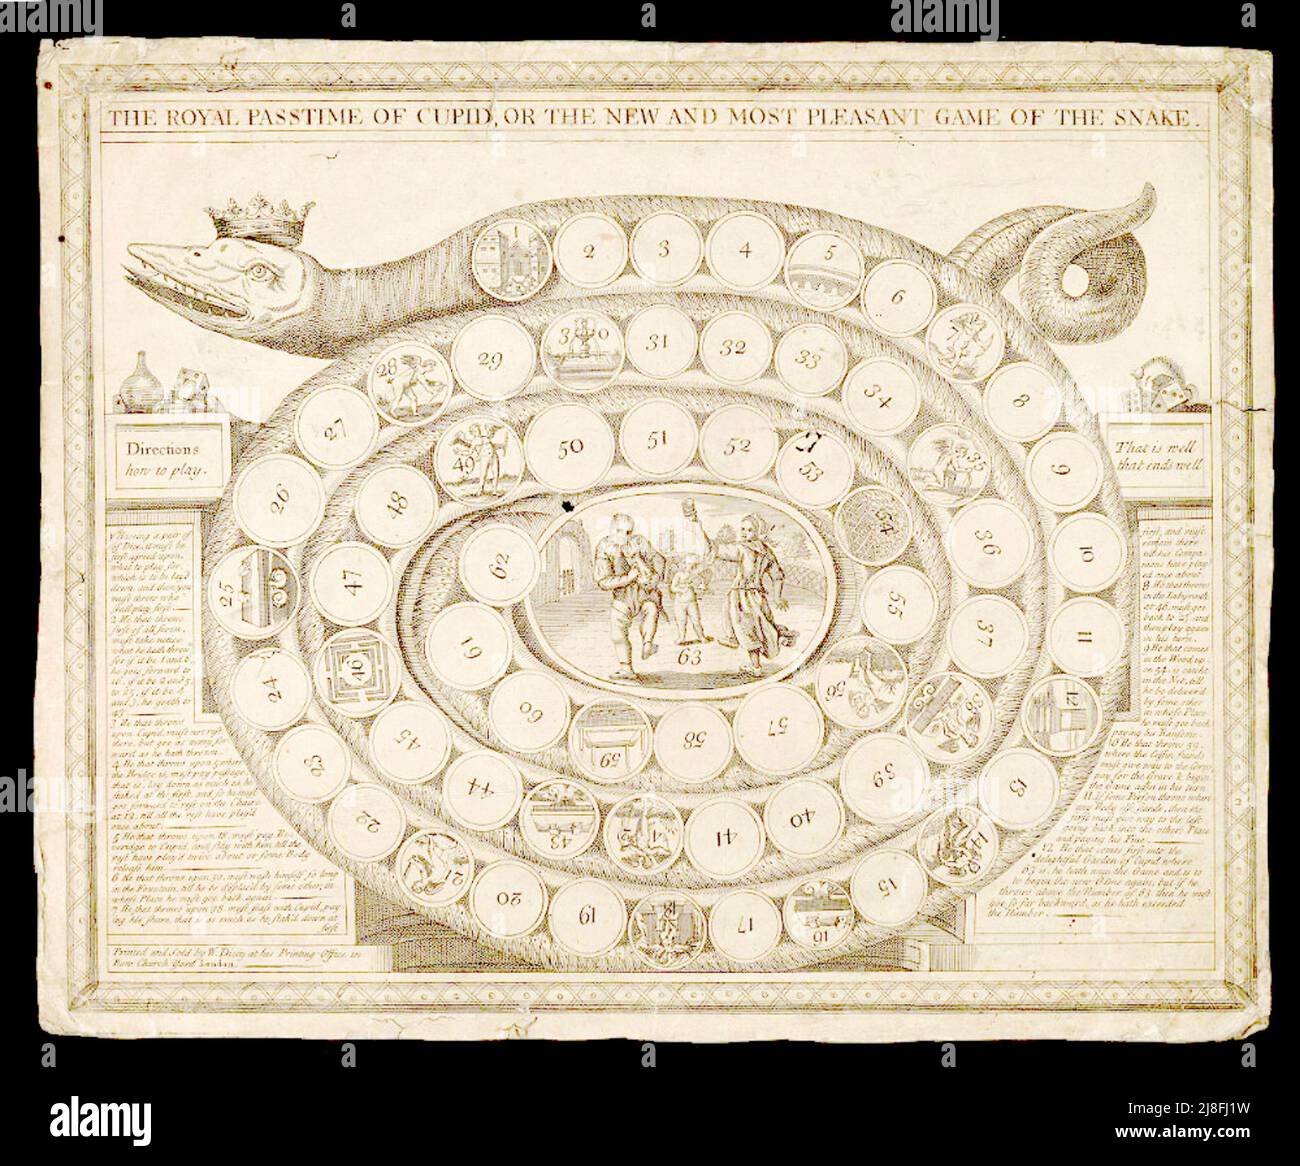 Königlicher Zeitvertreib des Amors oder das neue und angenehmste Spiel der Schlange - c1750 Stockfoto